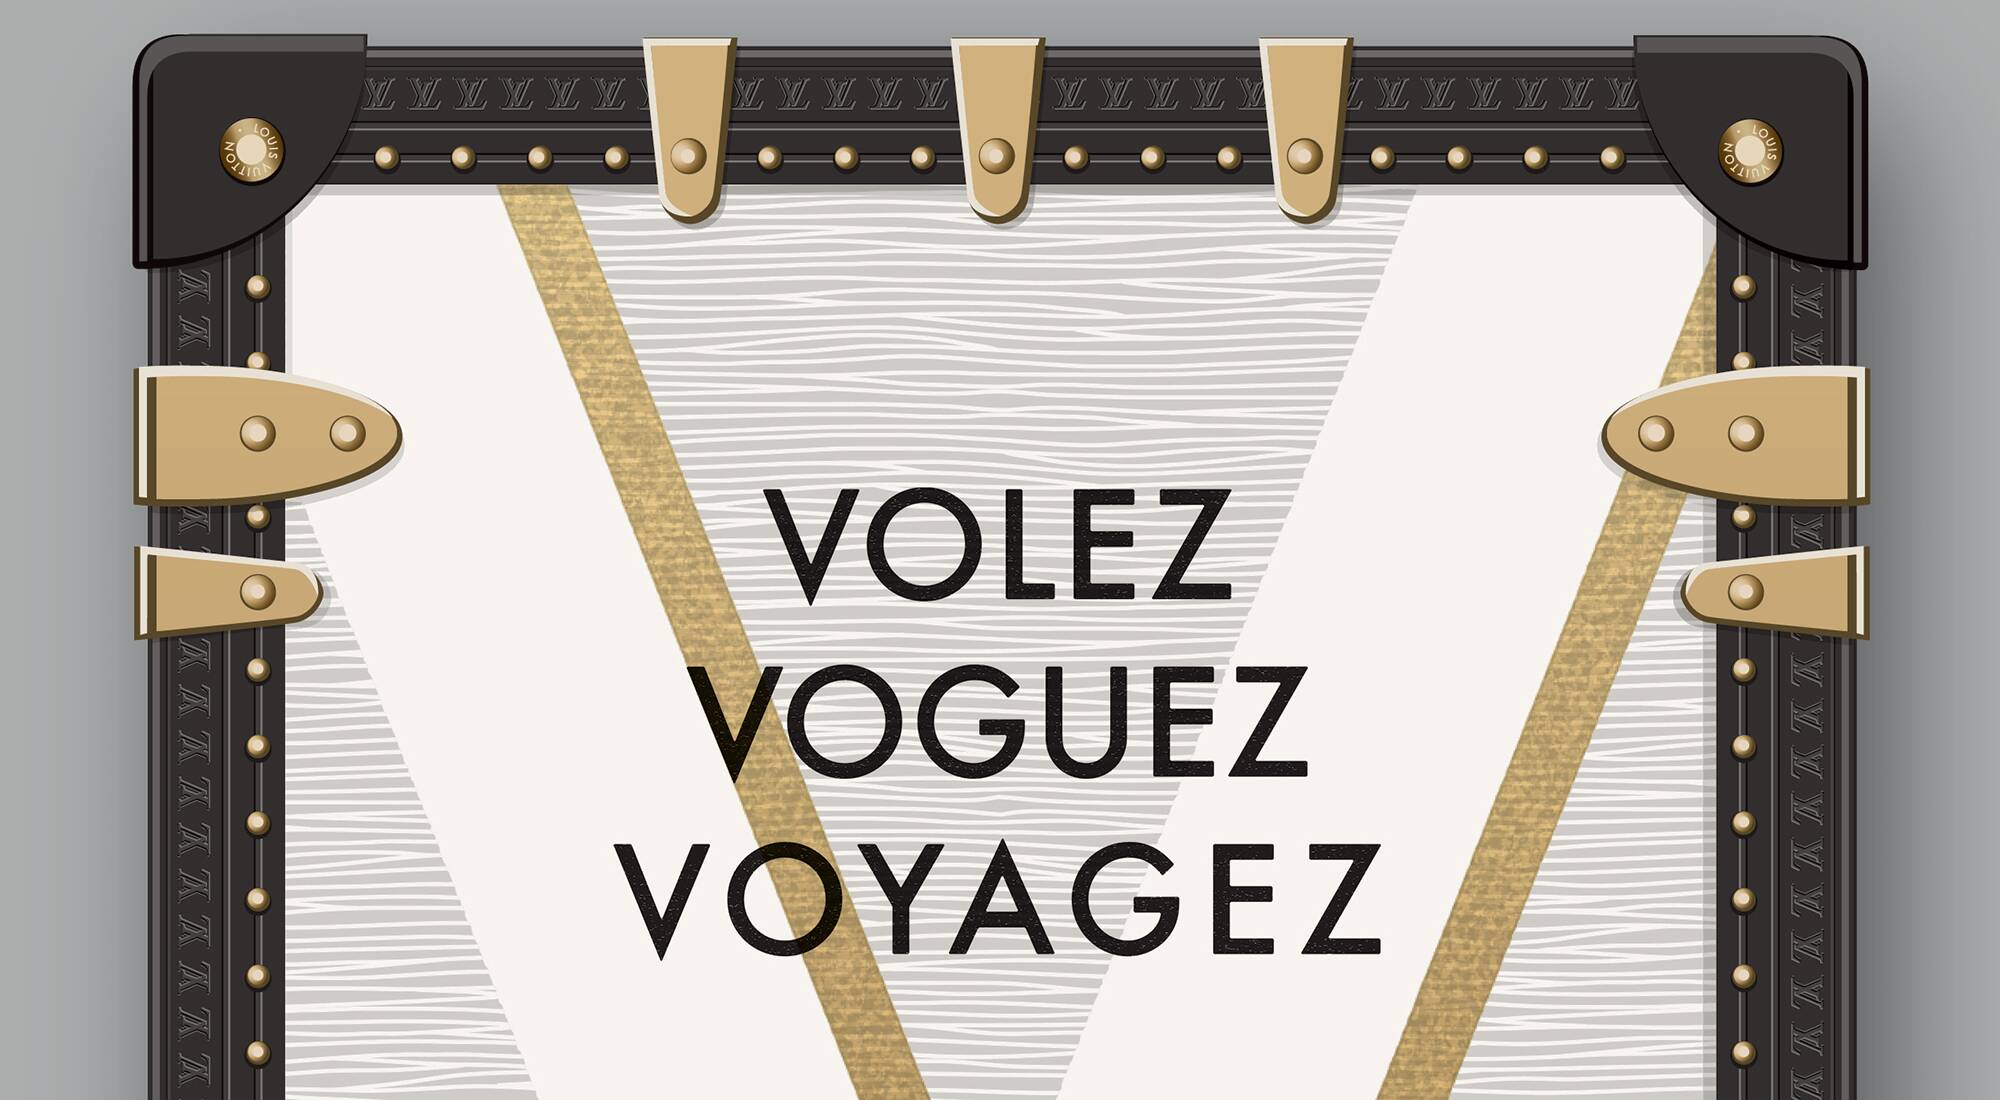 “Volez, Voguez, Voyagez” exhibition at Grand Palais celebrates Louis Vuitton heritage - LVMH